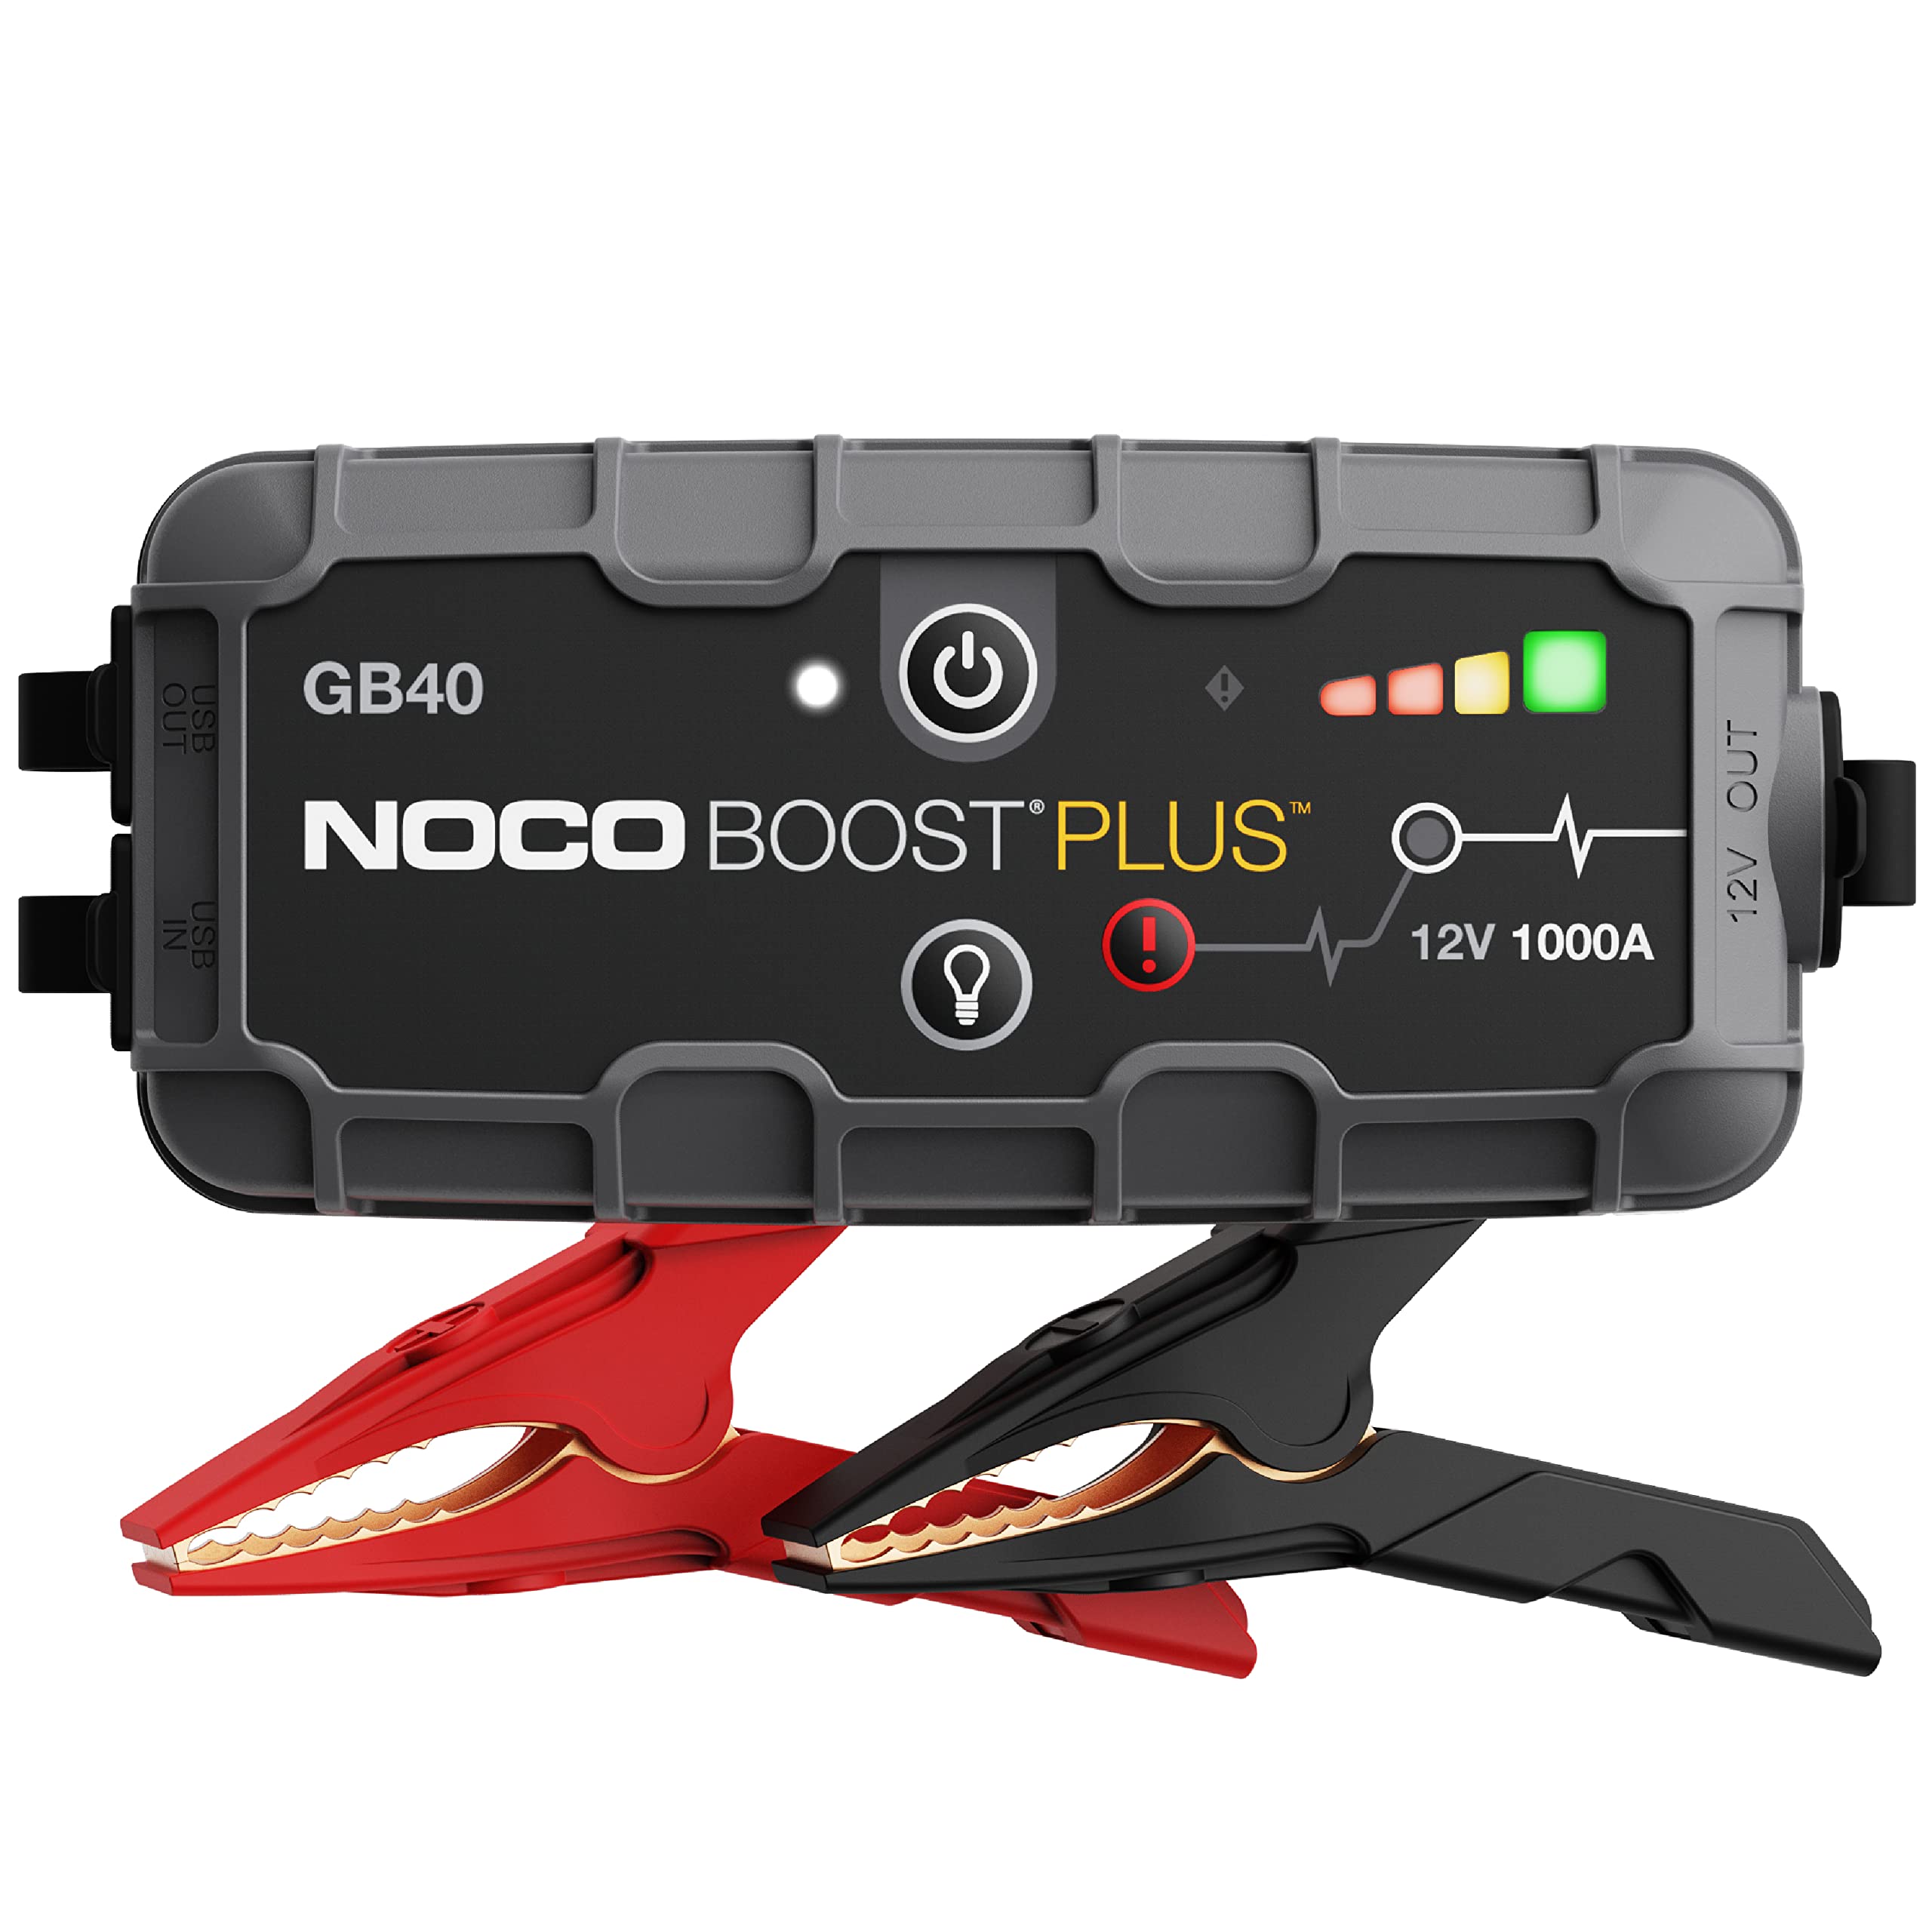 NOCO Boost Plus GB40 1000 安培 12 伏超安全锂应急启动箱、汽车电池升压器包、便携式移动电源充电器以及适用于最多 6 升汽油和 3 升柴油发动机的跨接电缆